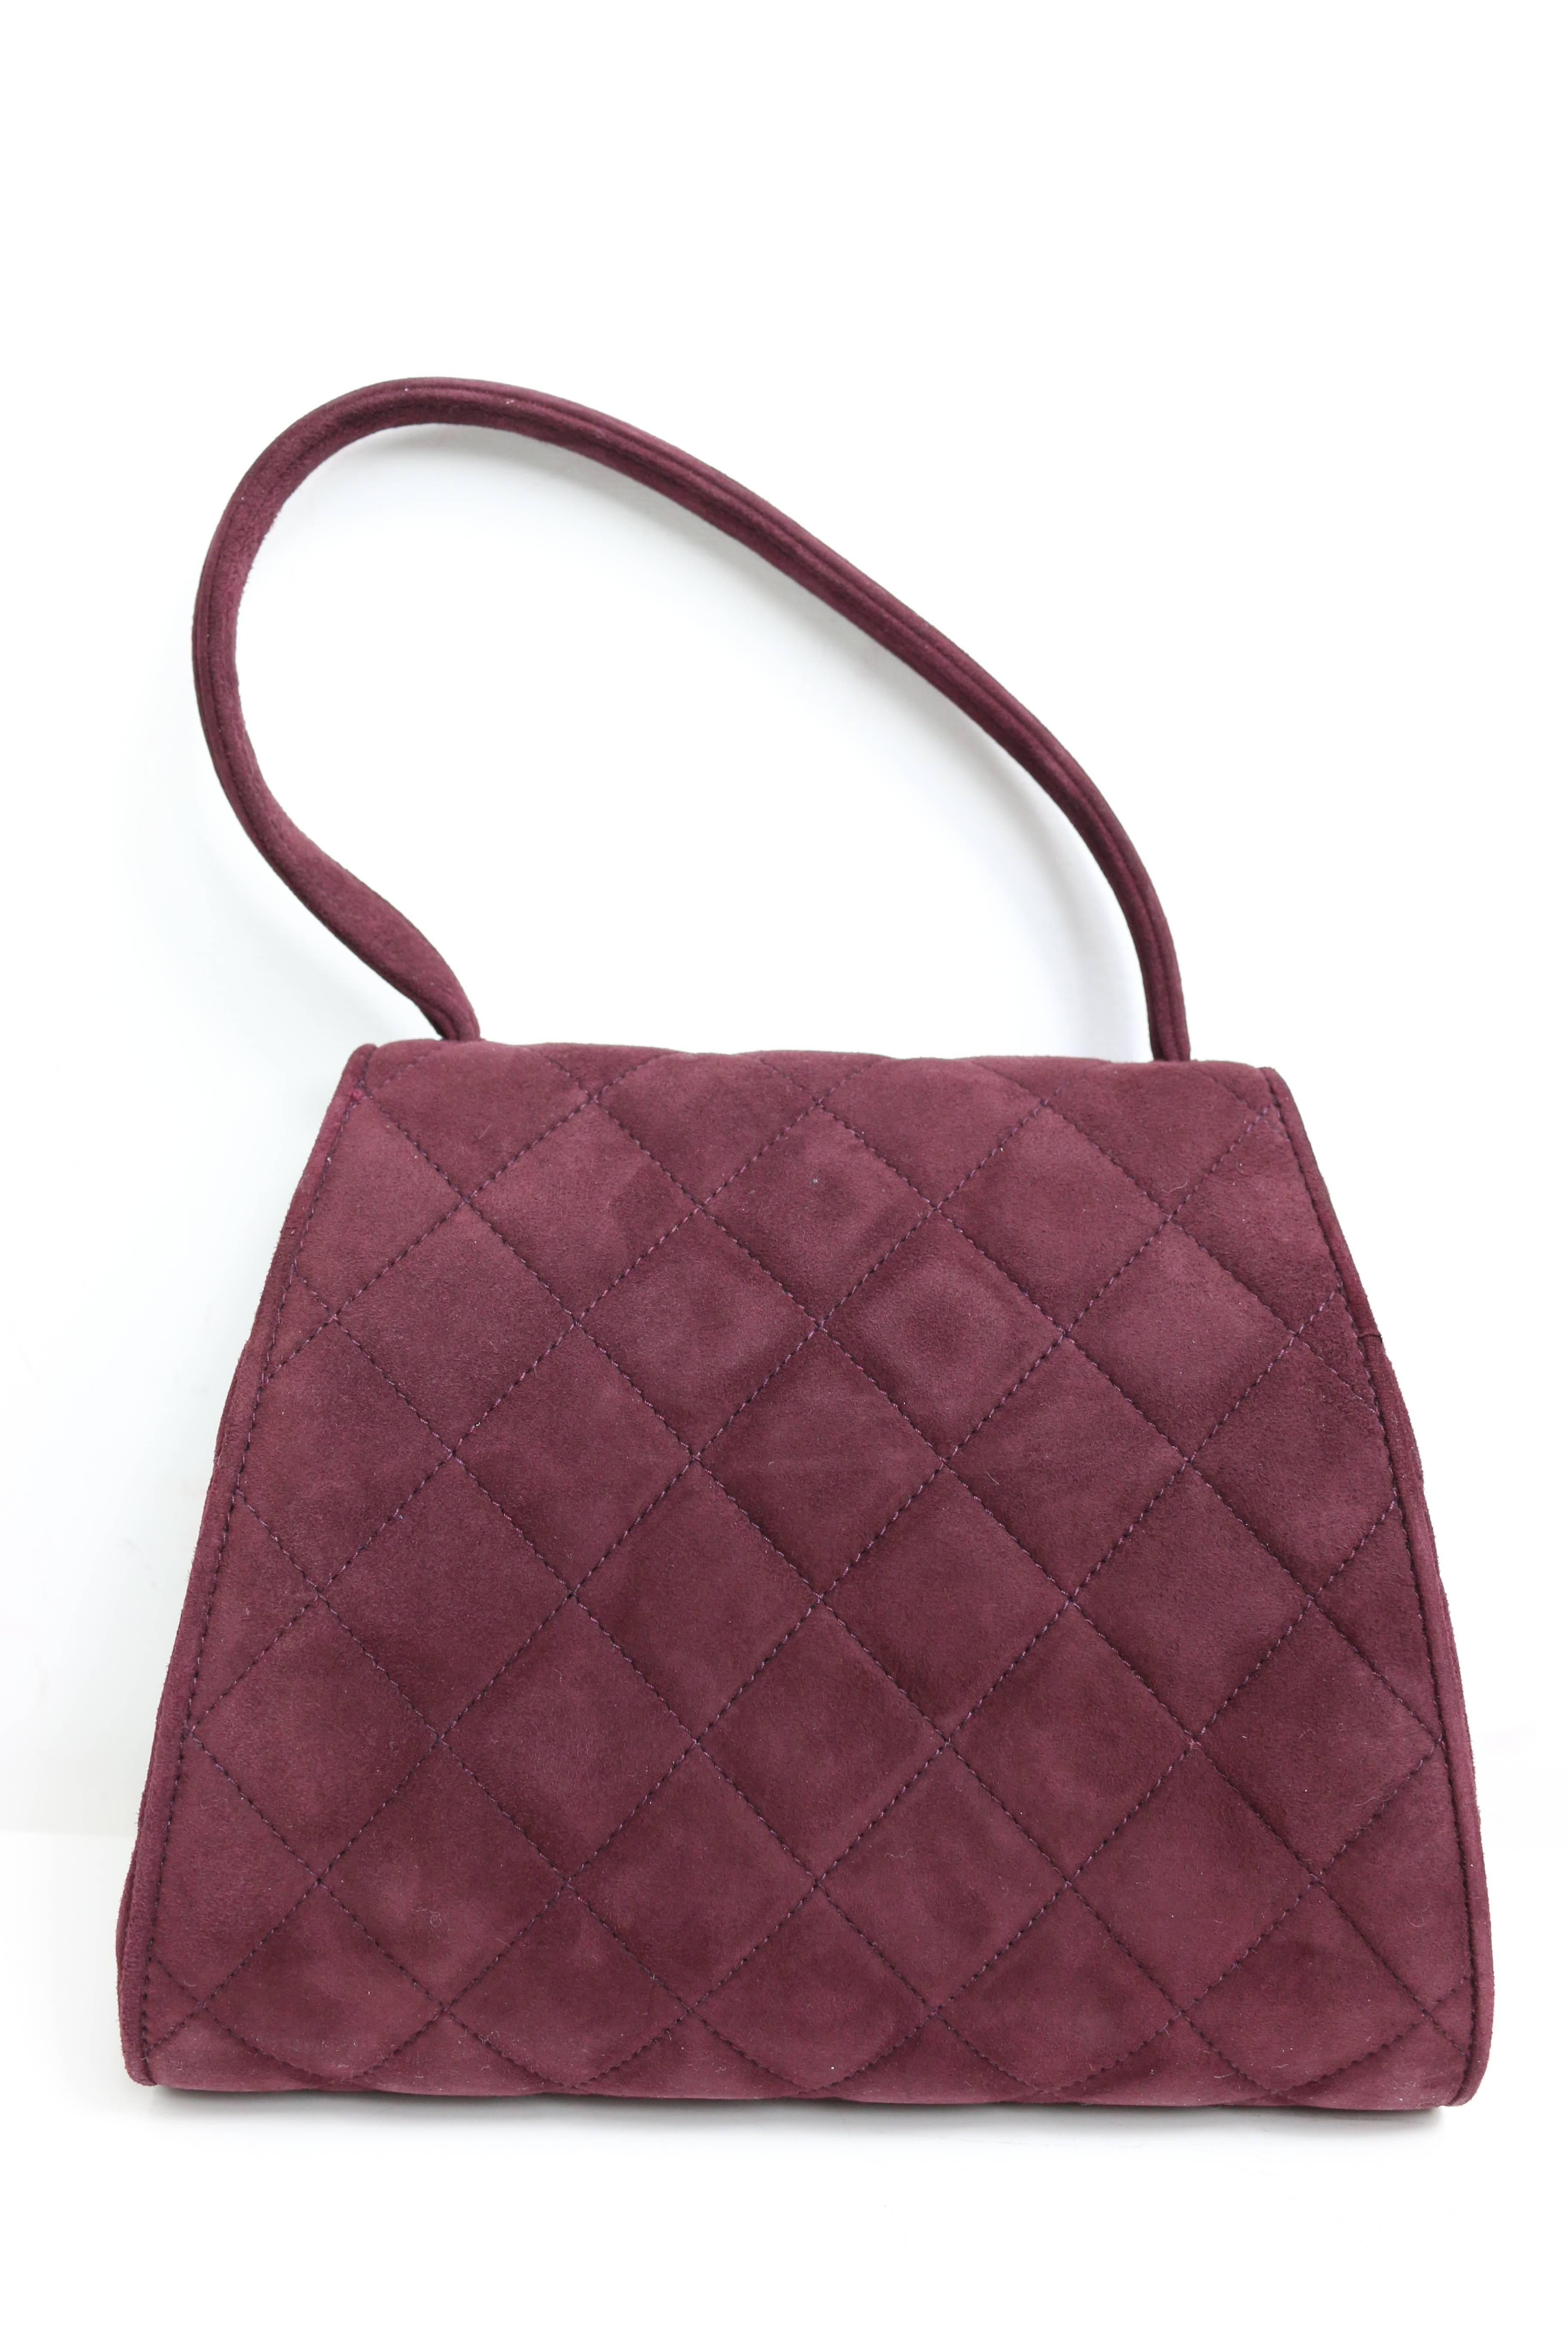 - Vintage 90s Chanel burgundy suede quilted flag handbag. 

-- Height: 17cm I Top Length: 16cm. Bottom Length: 20cm I Strap: 14cm I Width: 7cm. 

